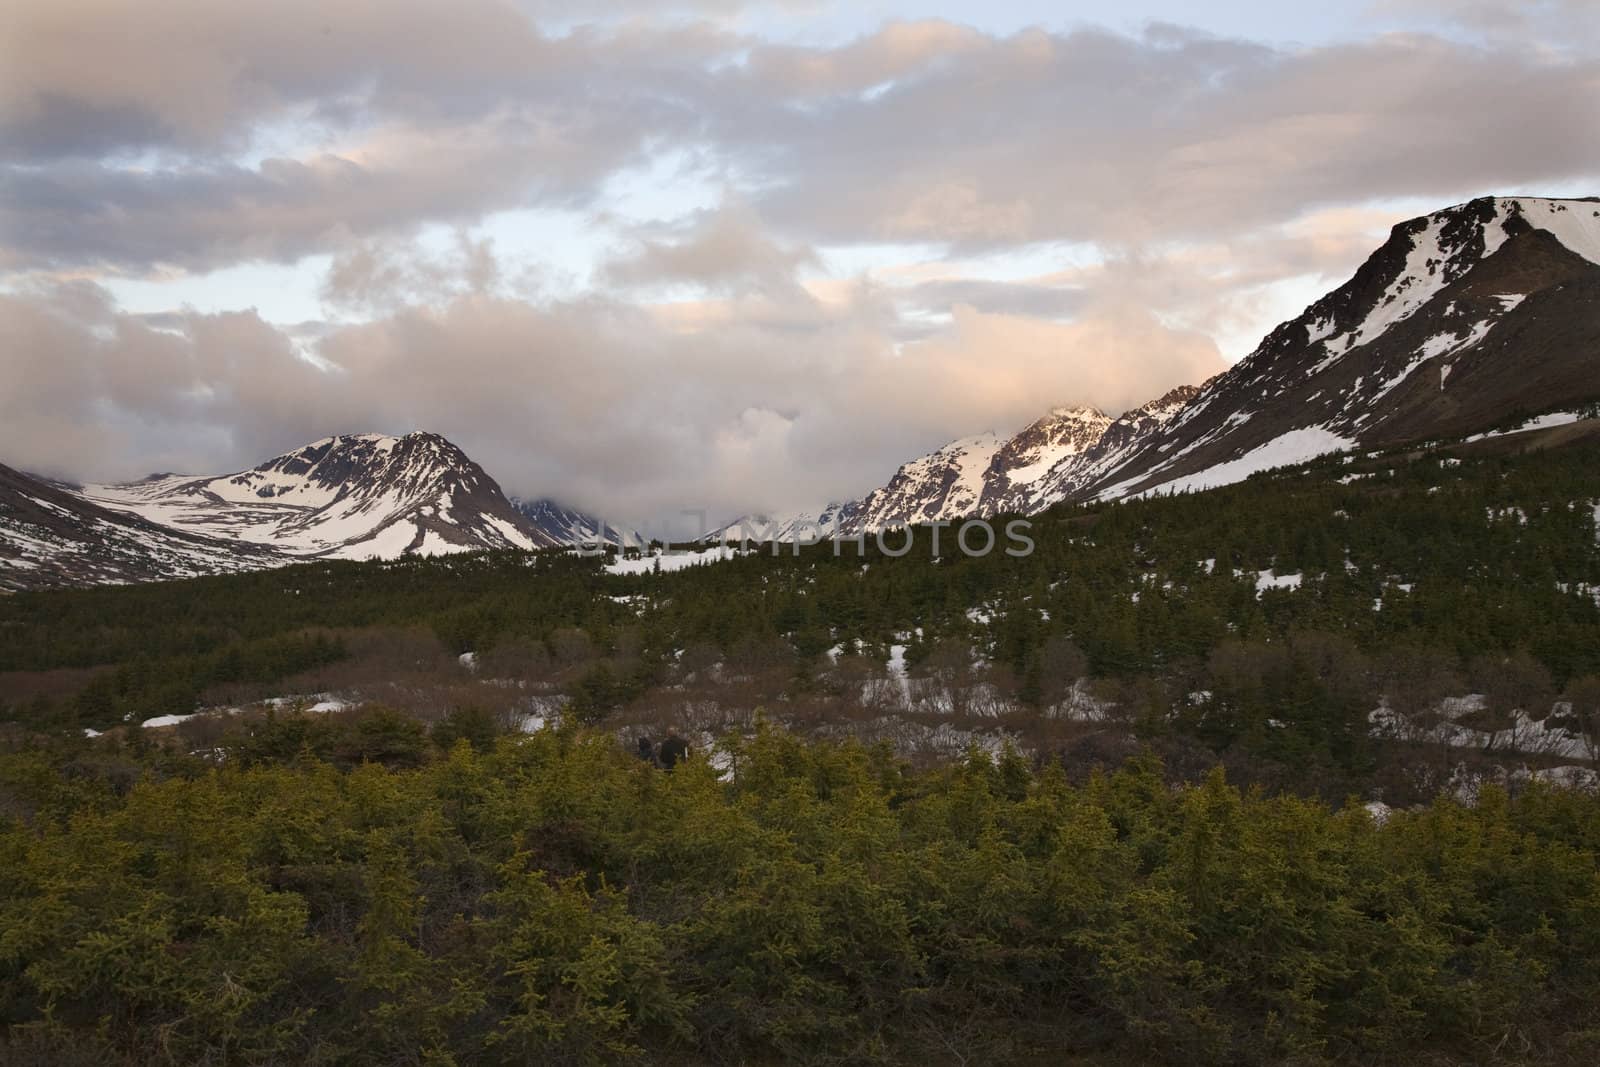 Hiking Flattop Mountain, Sunset, Anchorage, Alaska, snow, mountains.
